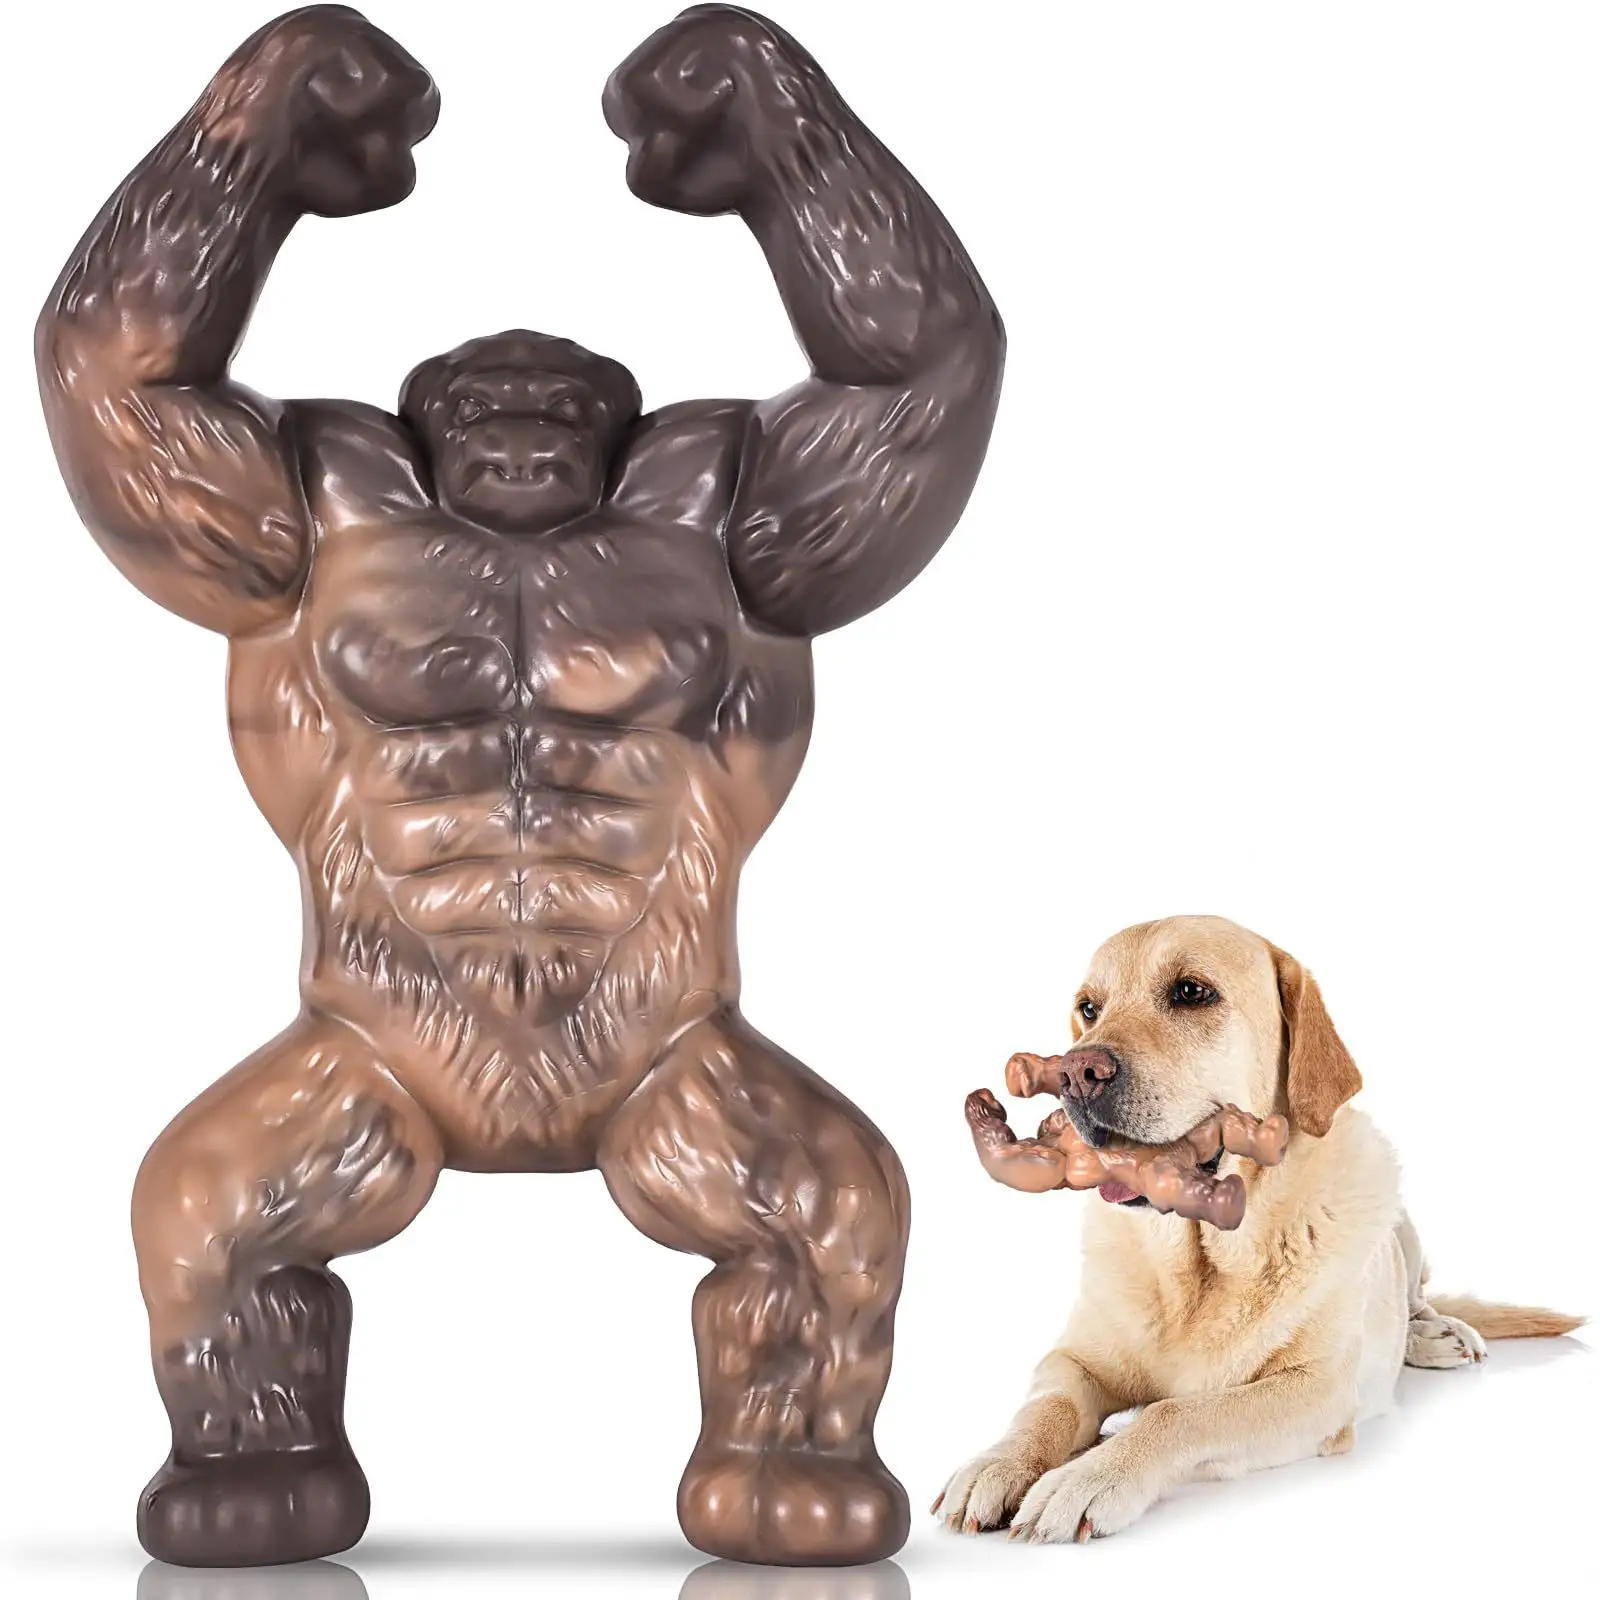 ของเล่นสุนัขเคี้ยวไนลอนเกรดอาหารดีไซน์กอริลลาแข็งแรงทนทานไม่เหมือนใครสำหรับสุนัขพันธุ์ใหญ่